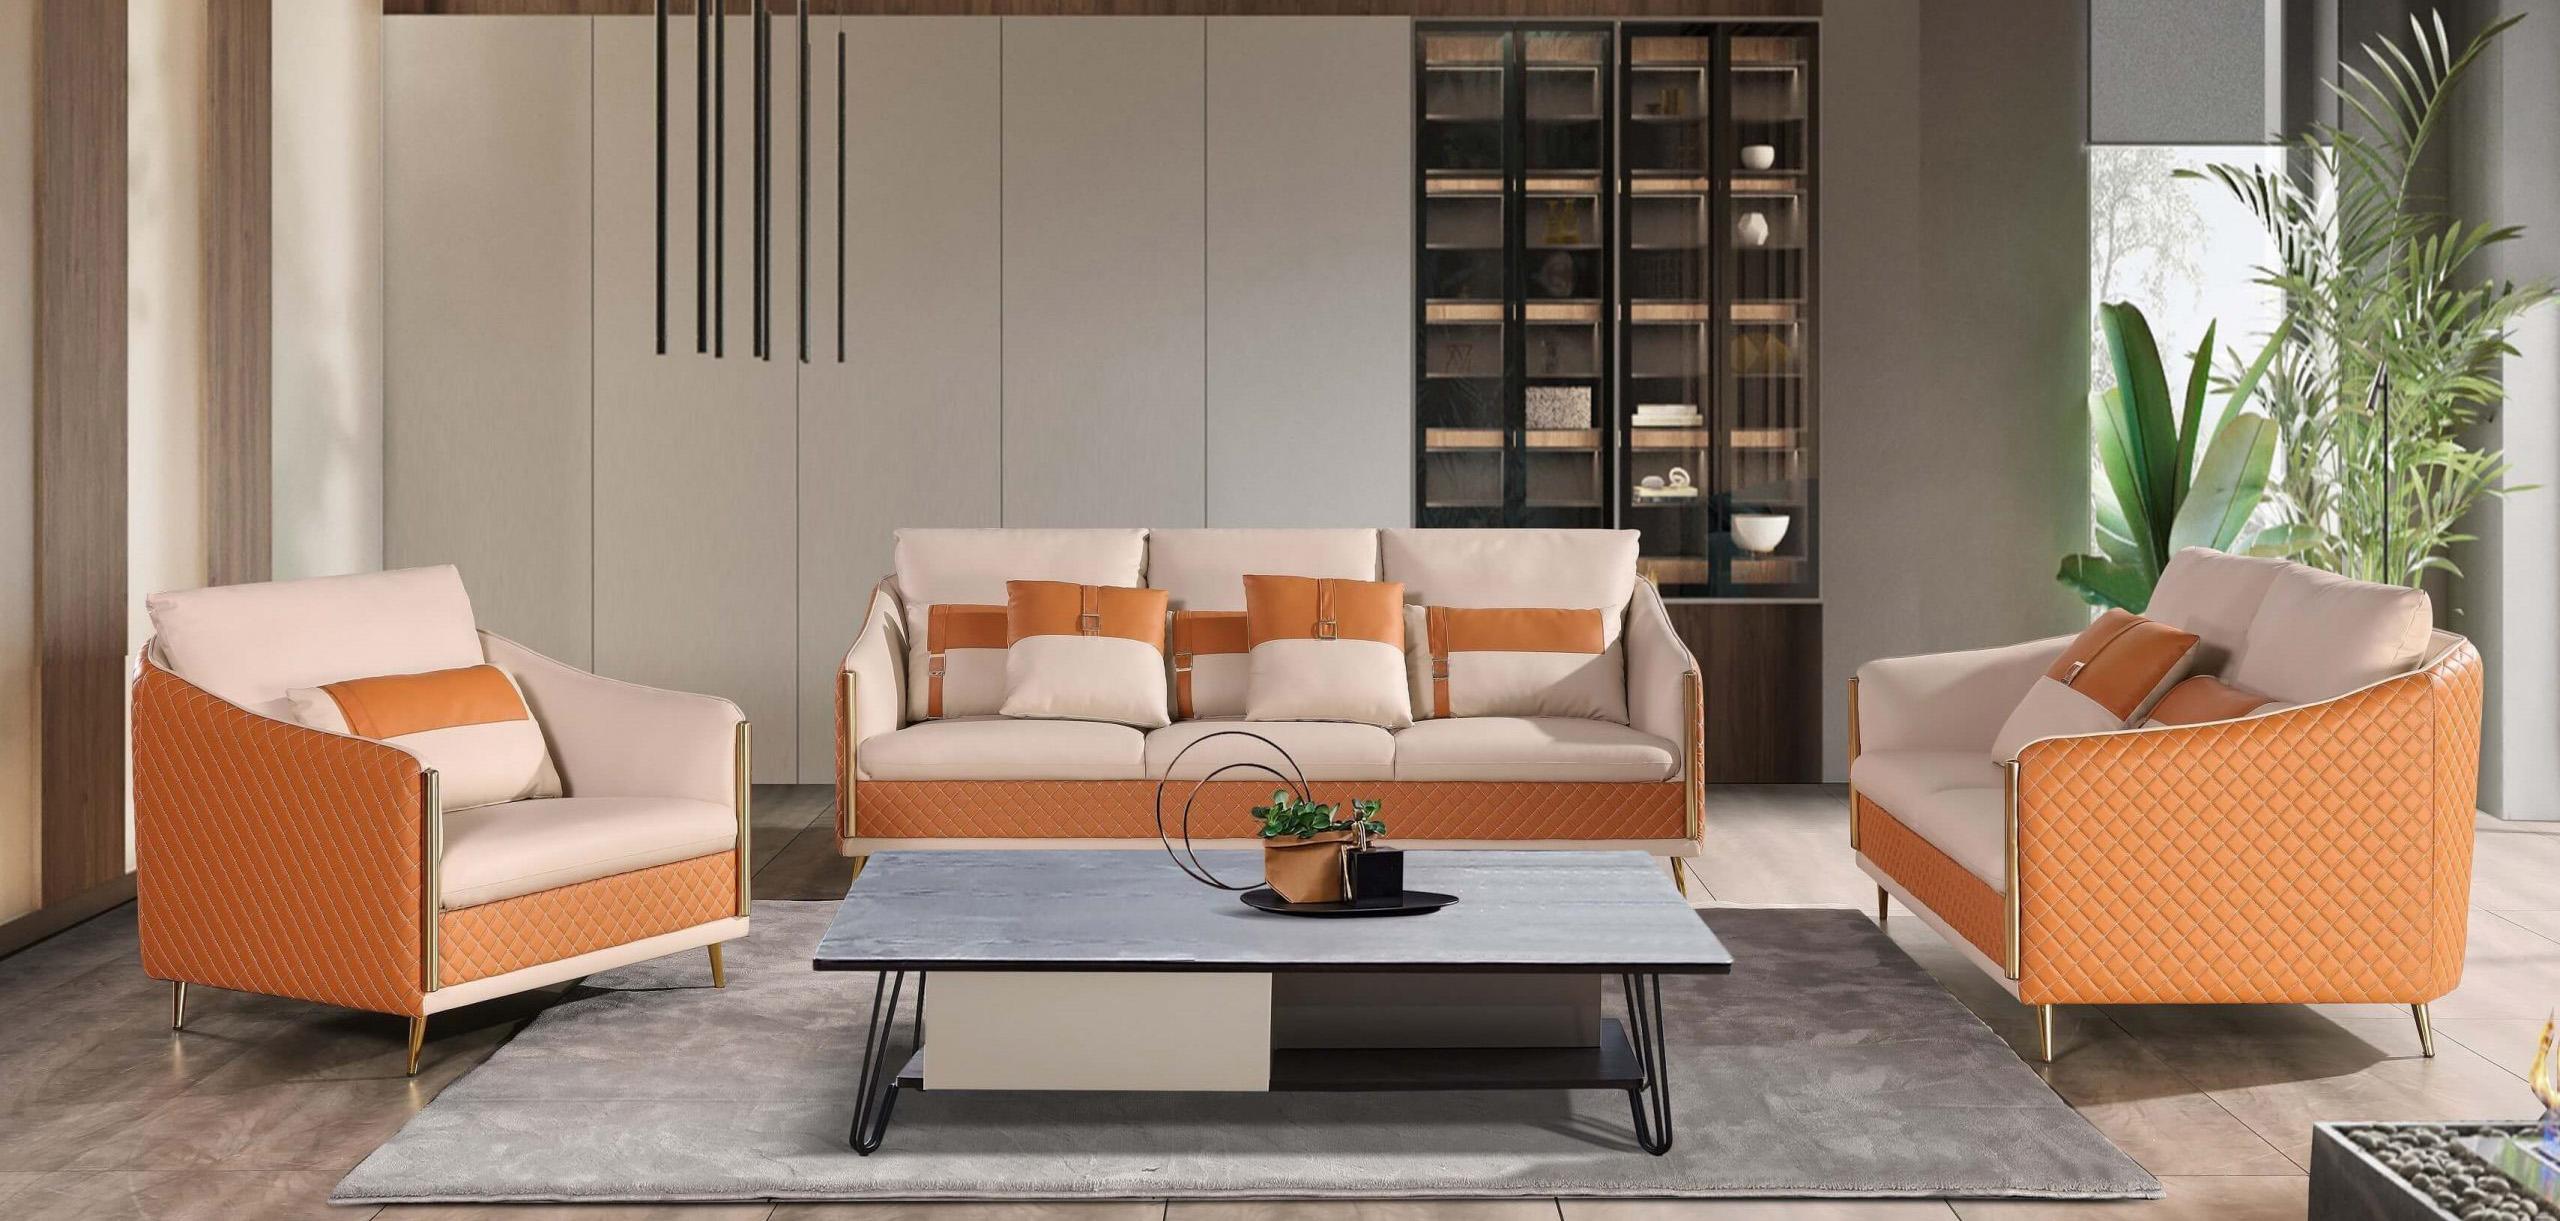 

    
Italian Leather Off White & Orange Sofa Set 3Pcs ICARO EUROPEAN FURNITURE Modern
